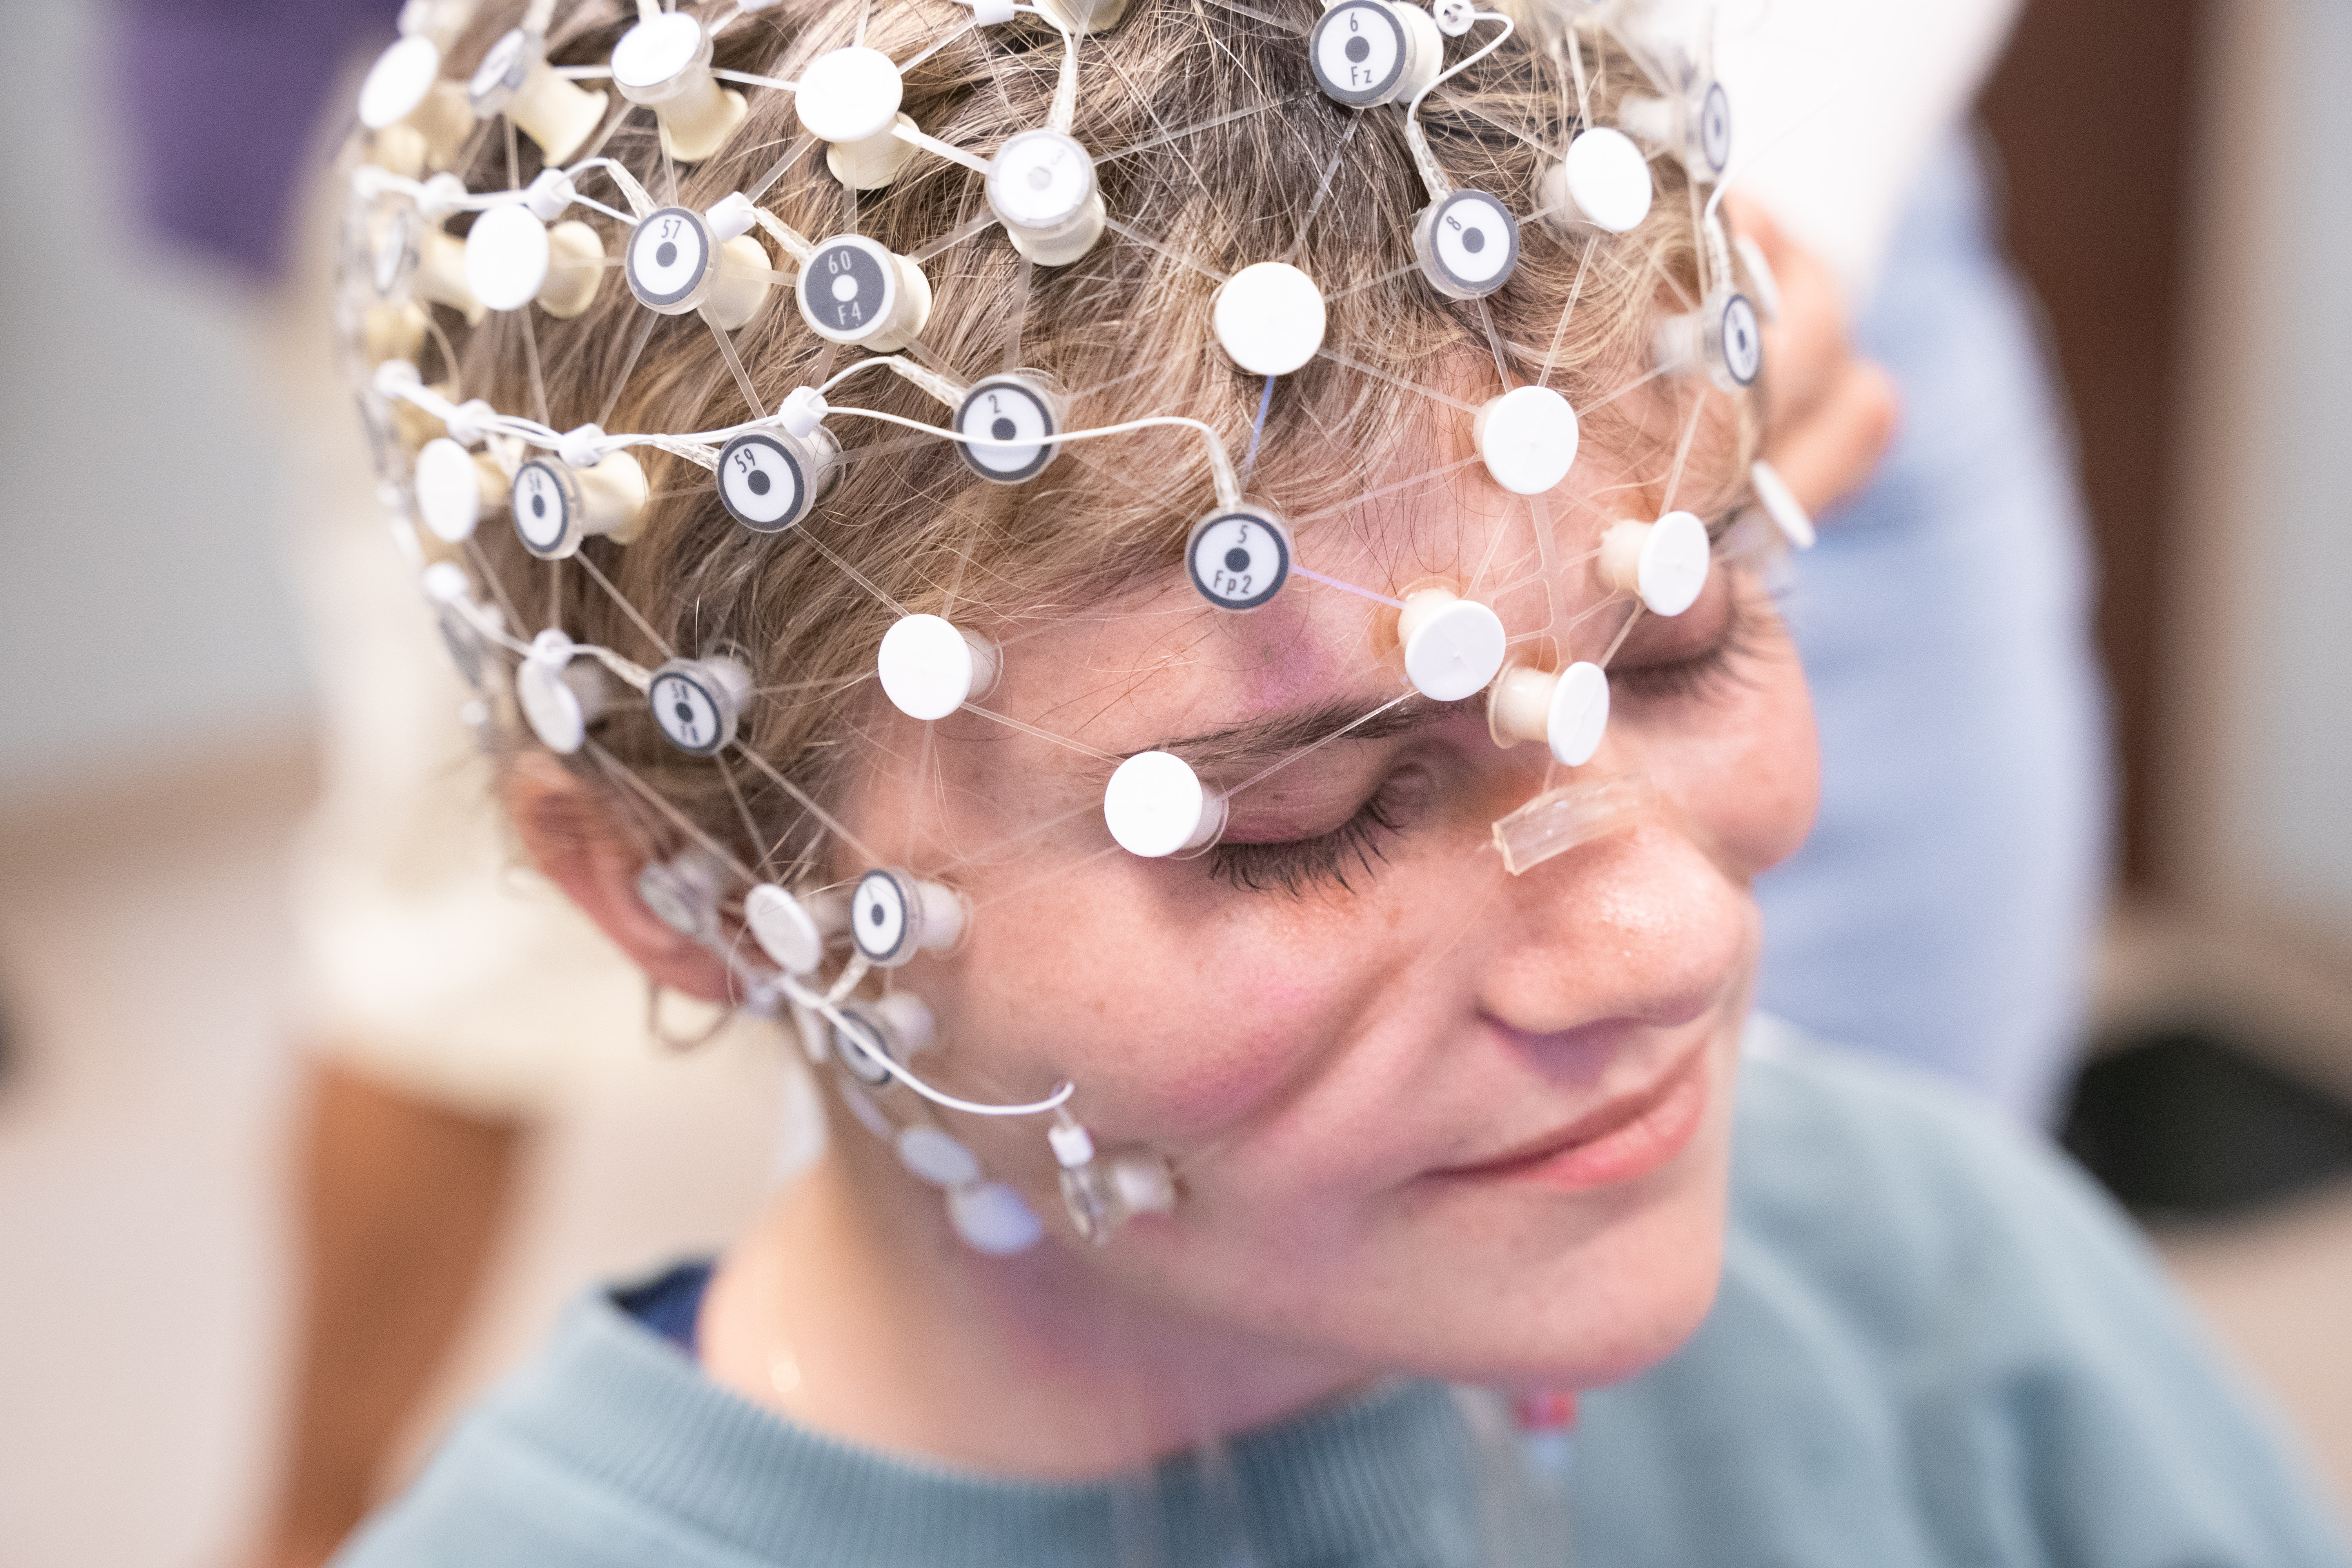 participant wearing EEG cap